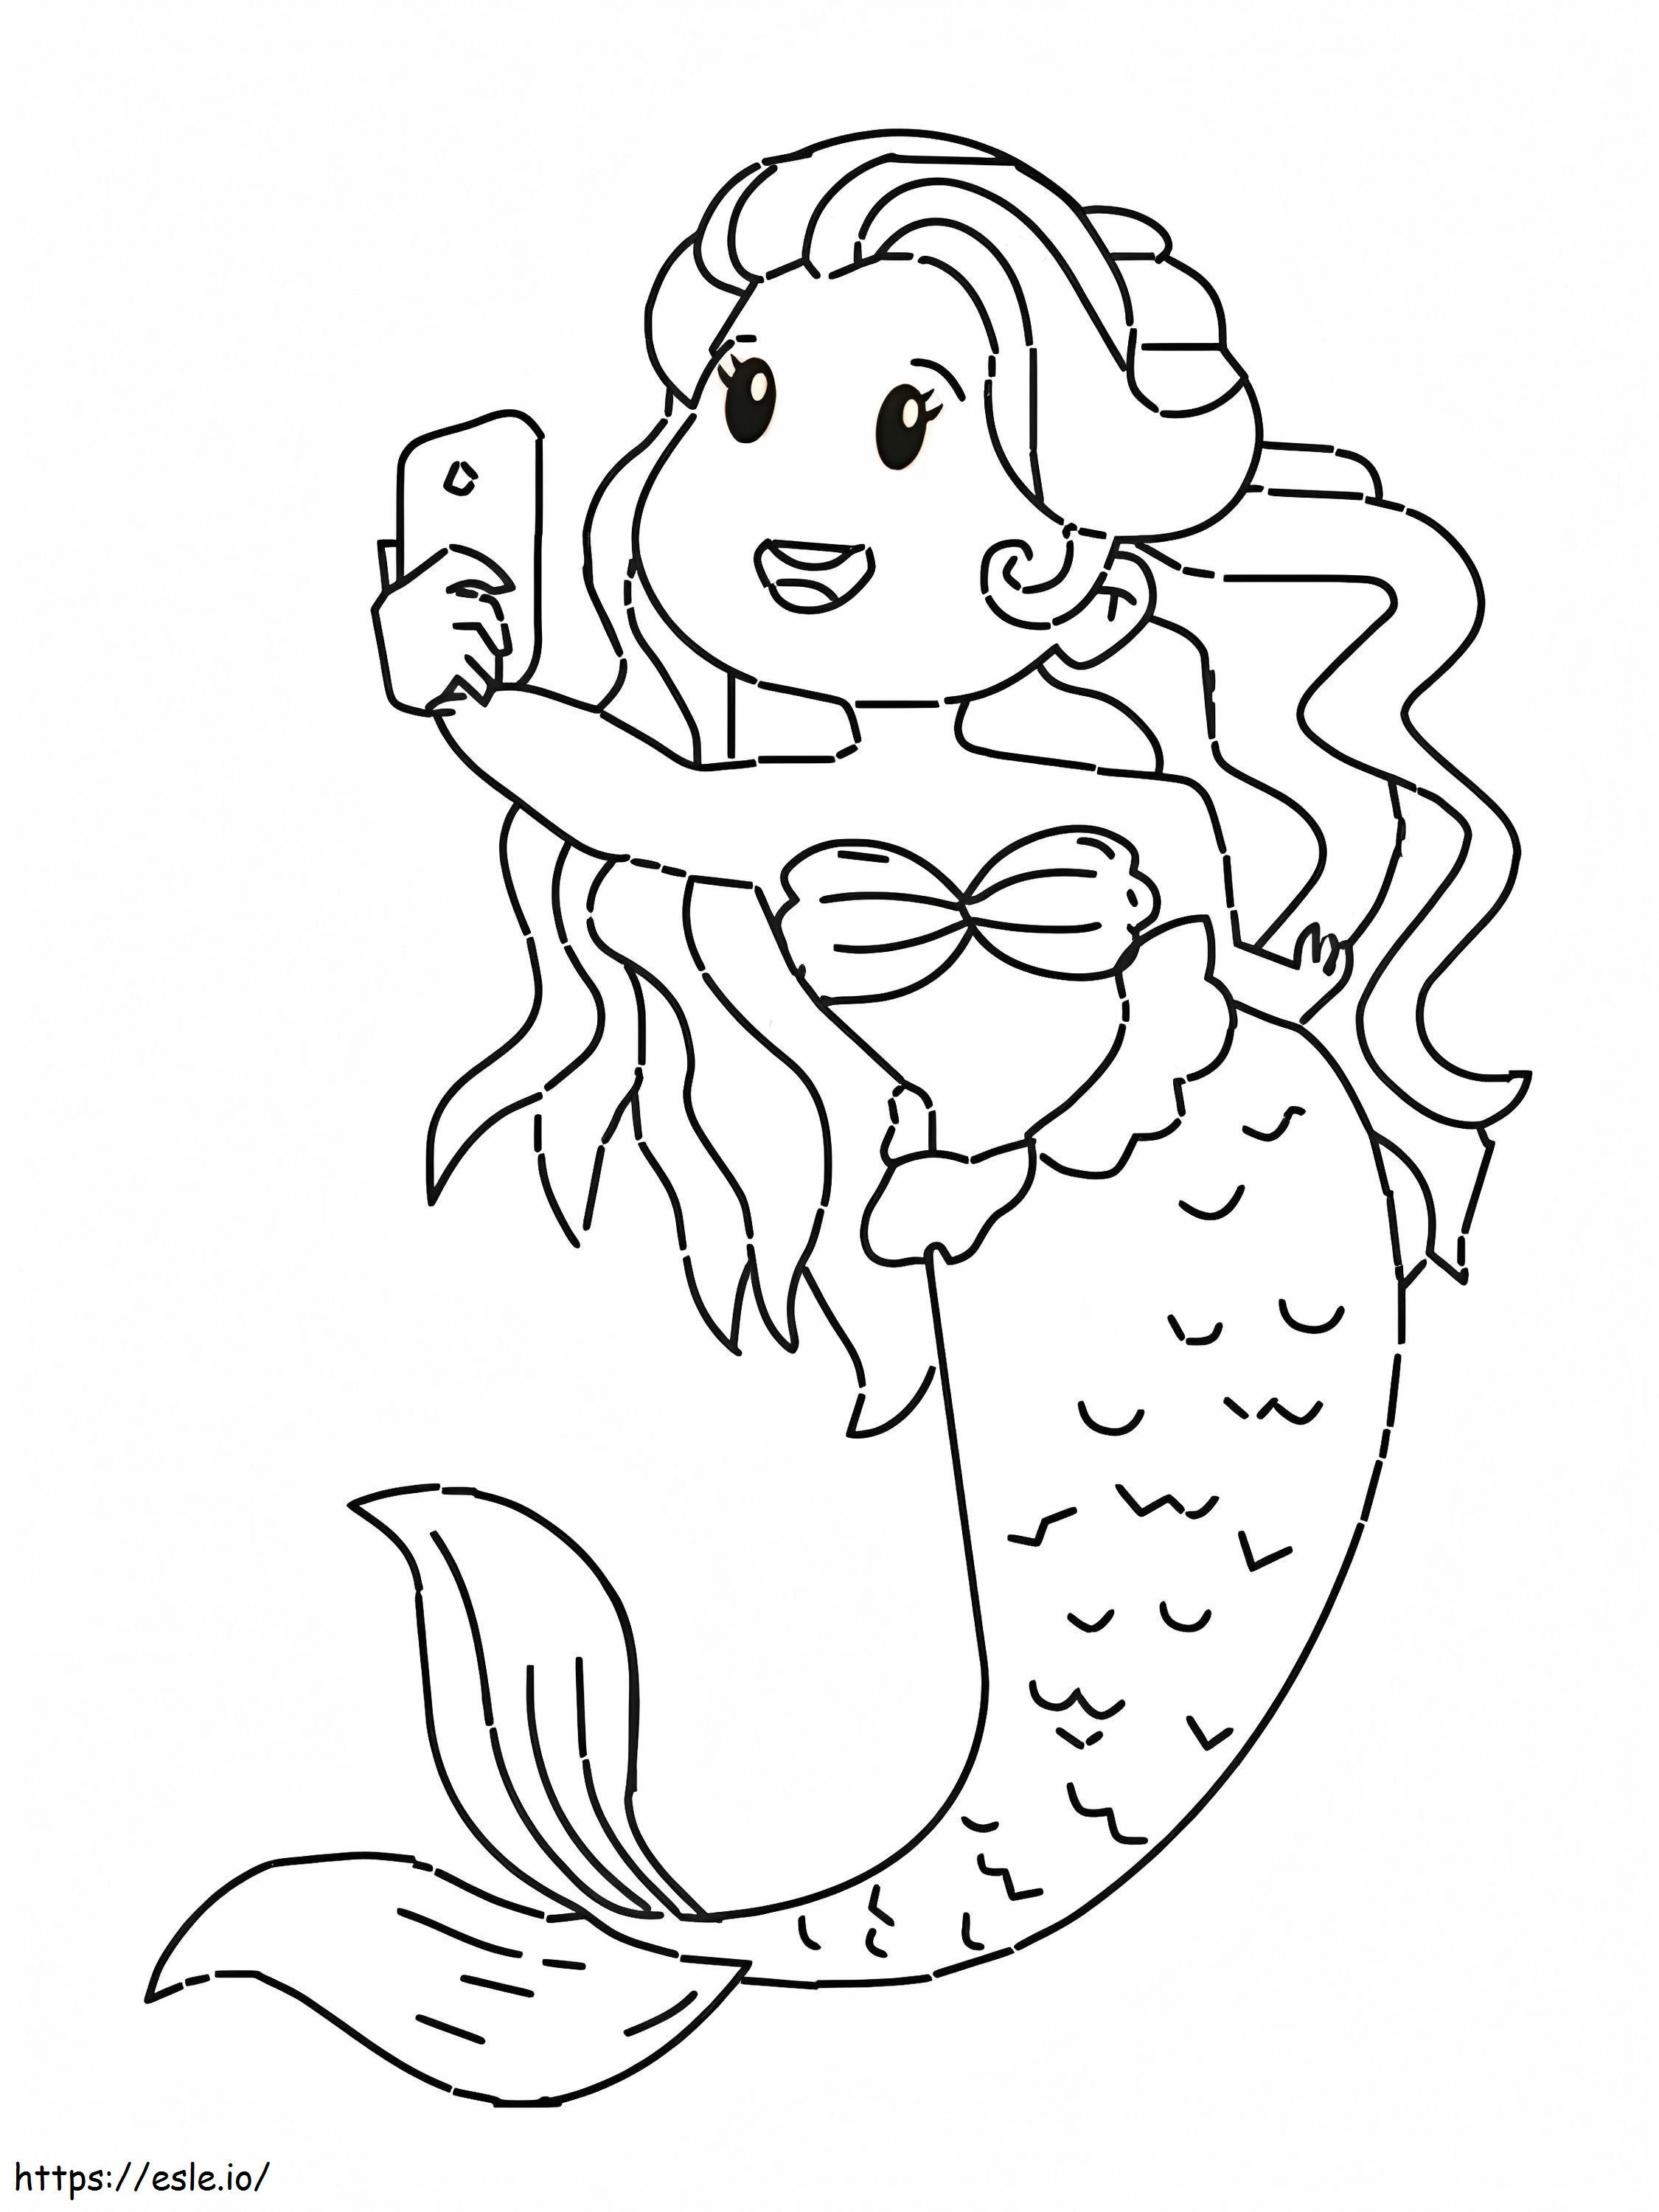 Meerjungfrau-Selfie ausmalbilder